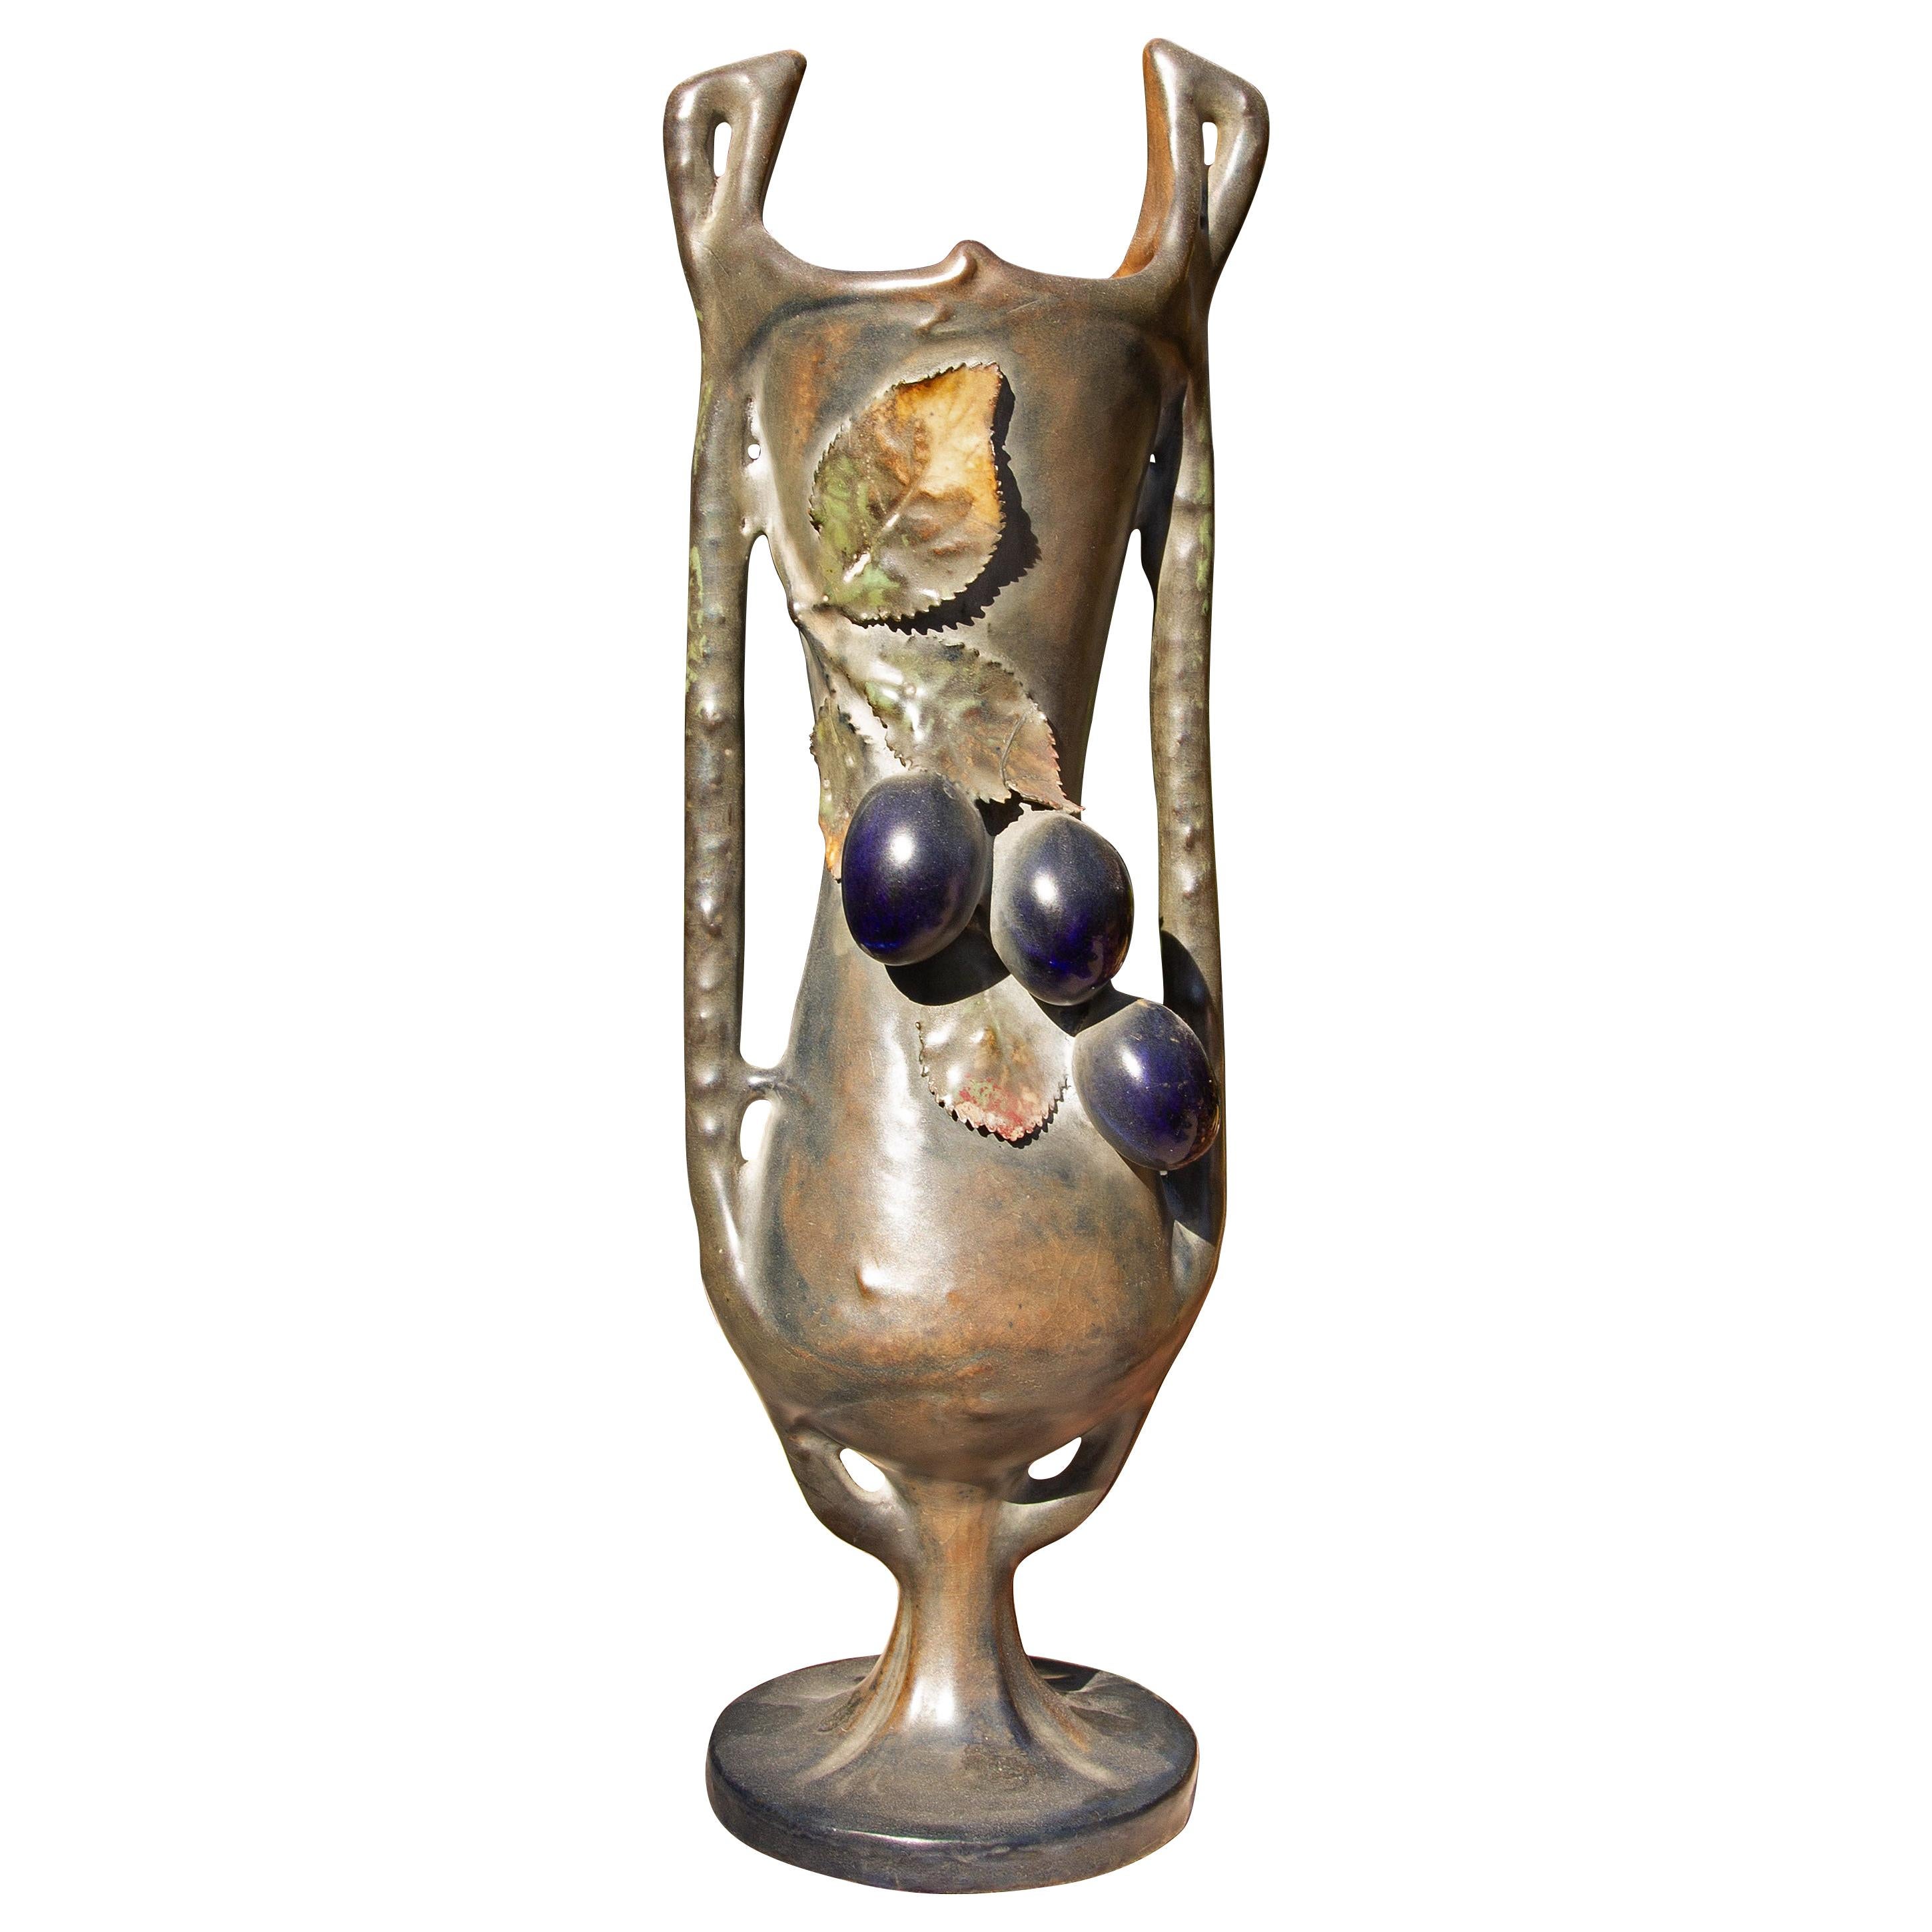 Austrian Art Nouveau Vase by Amphora